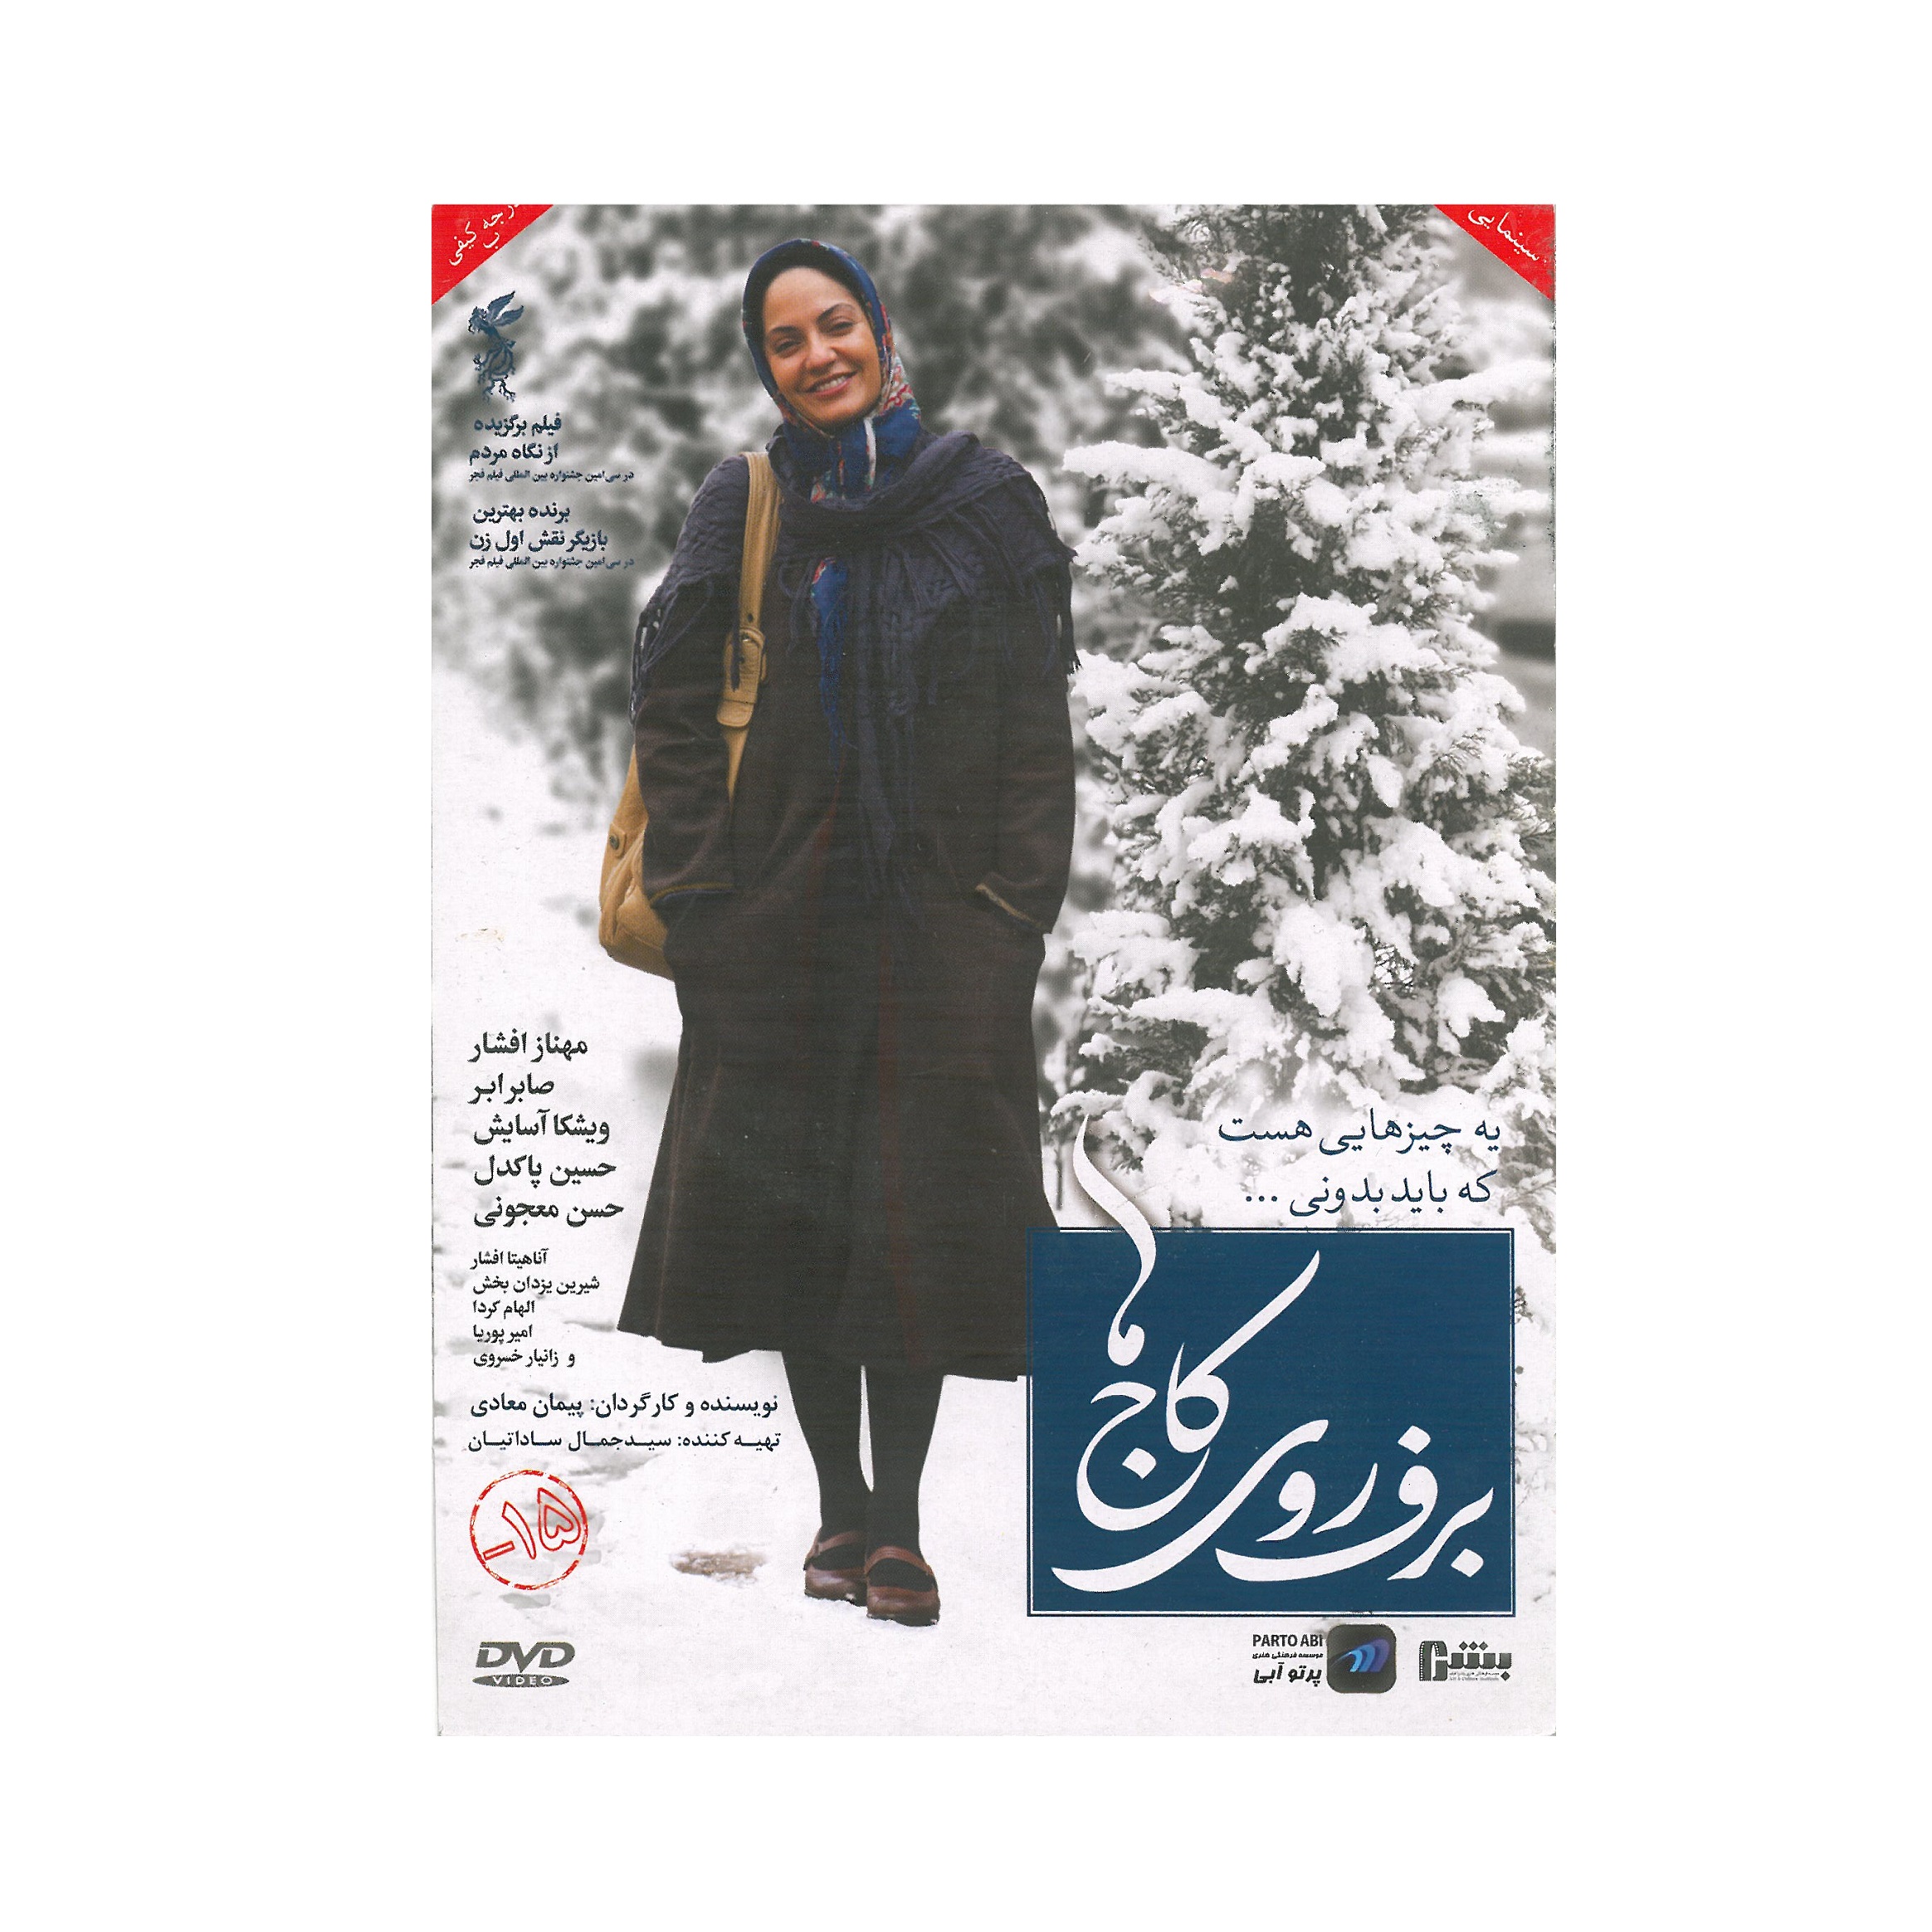 فیلم سینمایی برف روی کاج ها اثر پیمان معادی نشر پرتو آبی